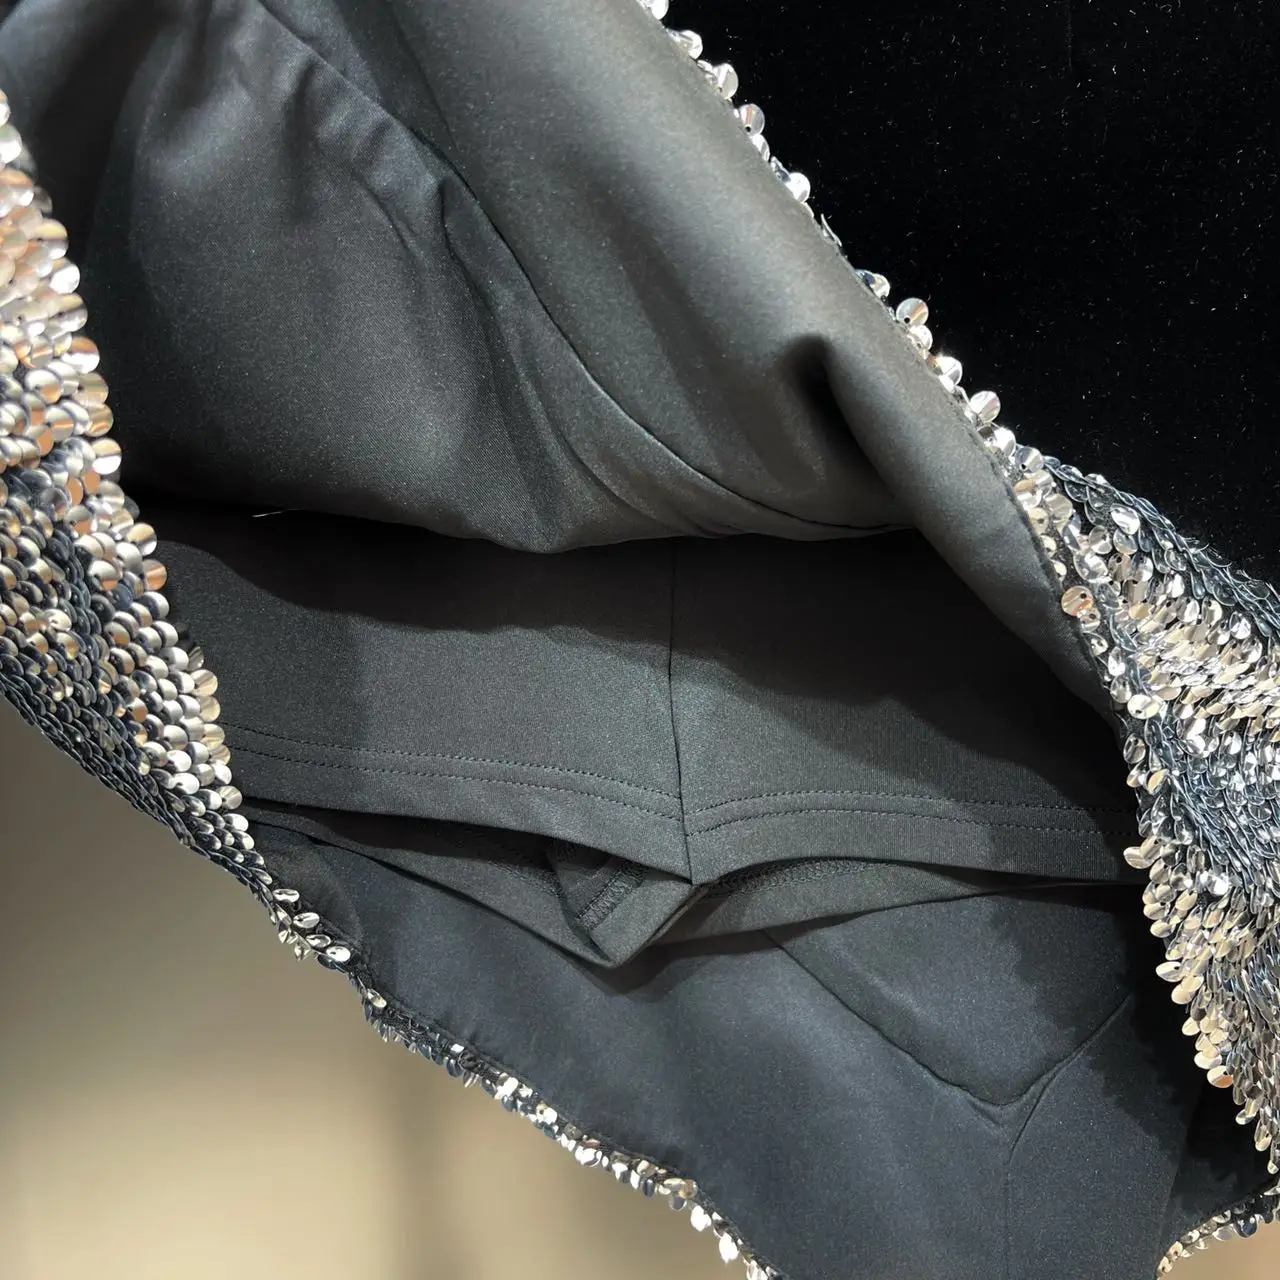 Sonbahar Kış 2022 Düzensiz Payetli Dekorasyon Bodycon Mini Etek Kadın Zarif Yüksek Anlamda Slim Fit Siyah Kadife Kısa Etek Görüntü 3 